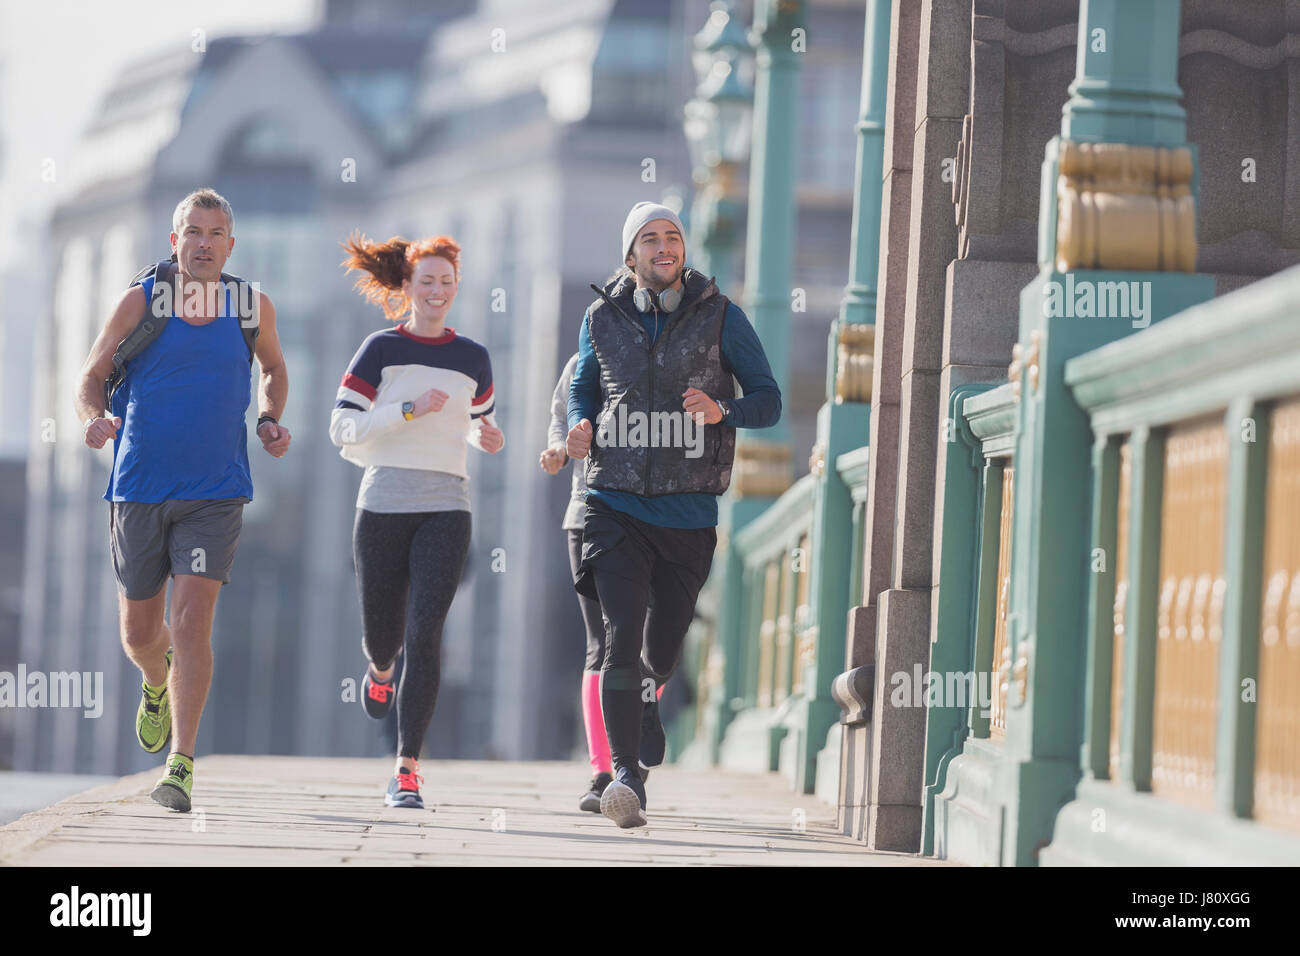 Läufer laufen auf sonnigen städtischen Bürgersteig Stockfoto